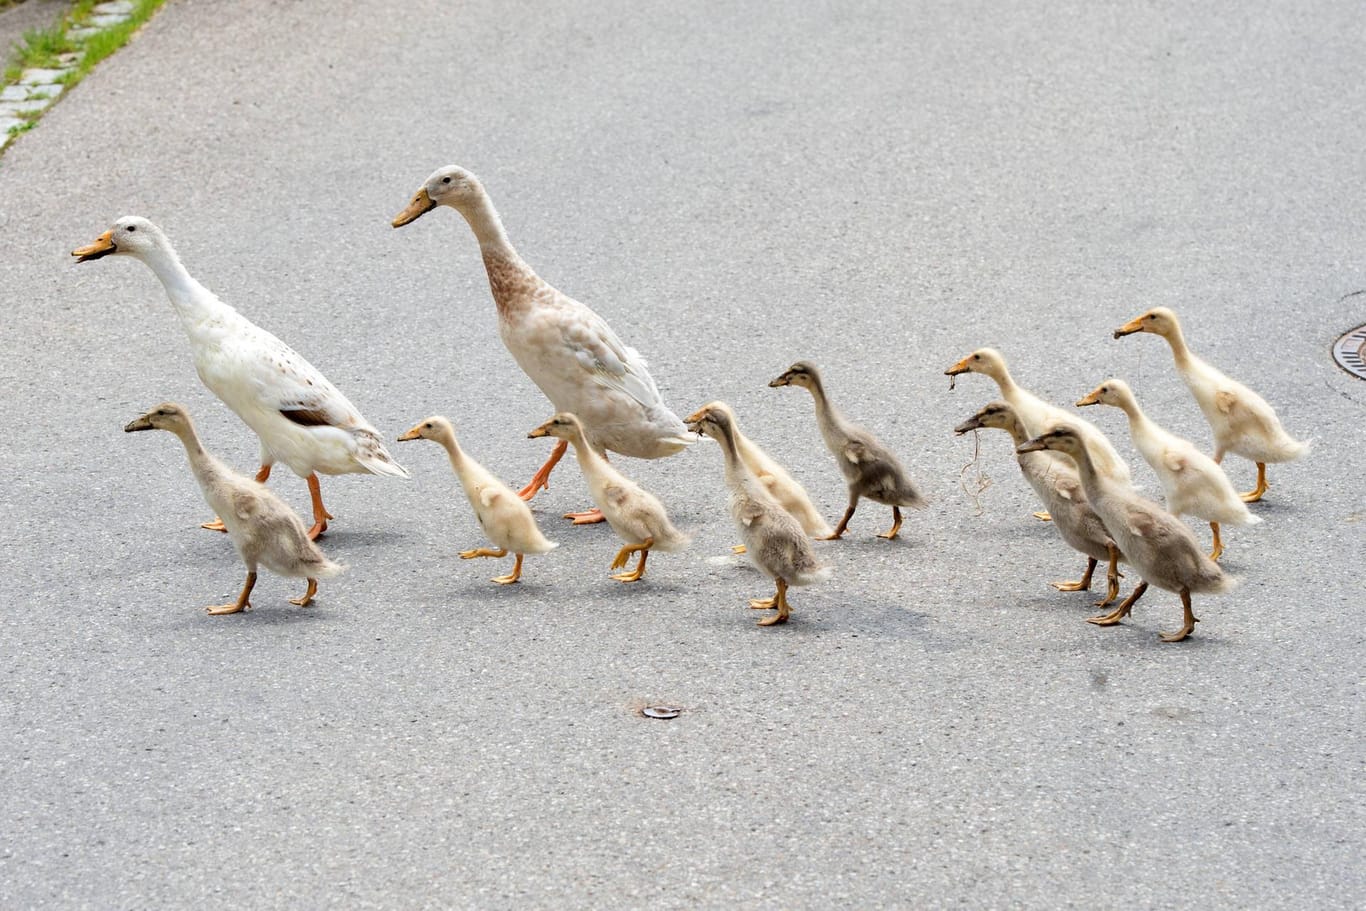 Enten überqueren eine Straße. In Celle hat ein Tierquäler eine Entenfamilie absichtlich überfahren. Nur vier Küken überlebten den Angriff.